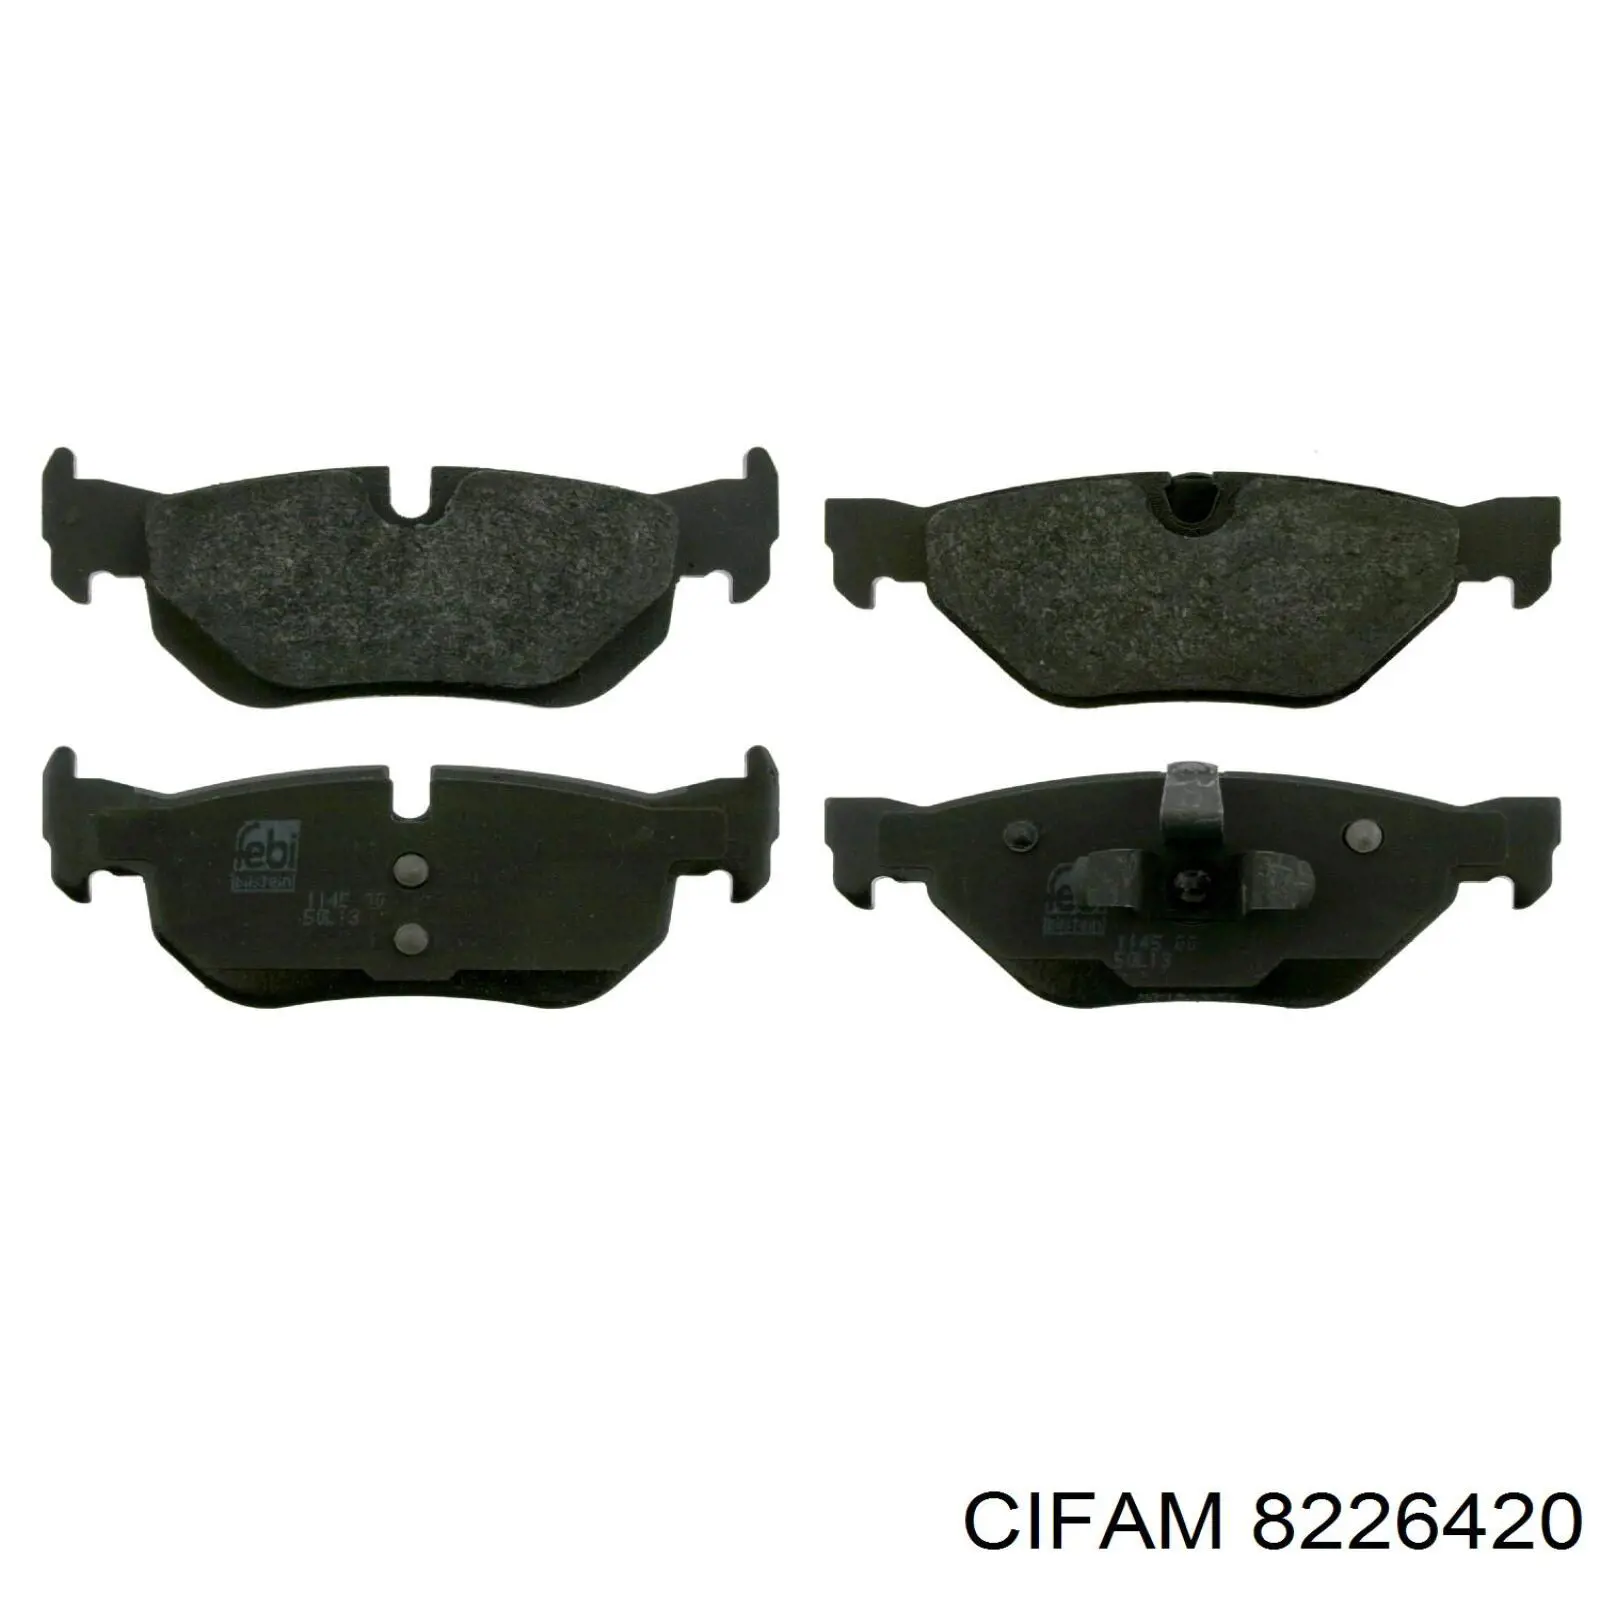 822-642-0 Cifam колодки тормозные задние дисковые